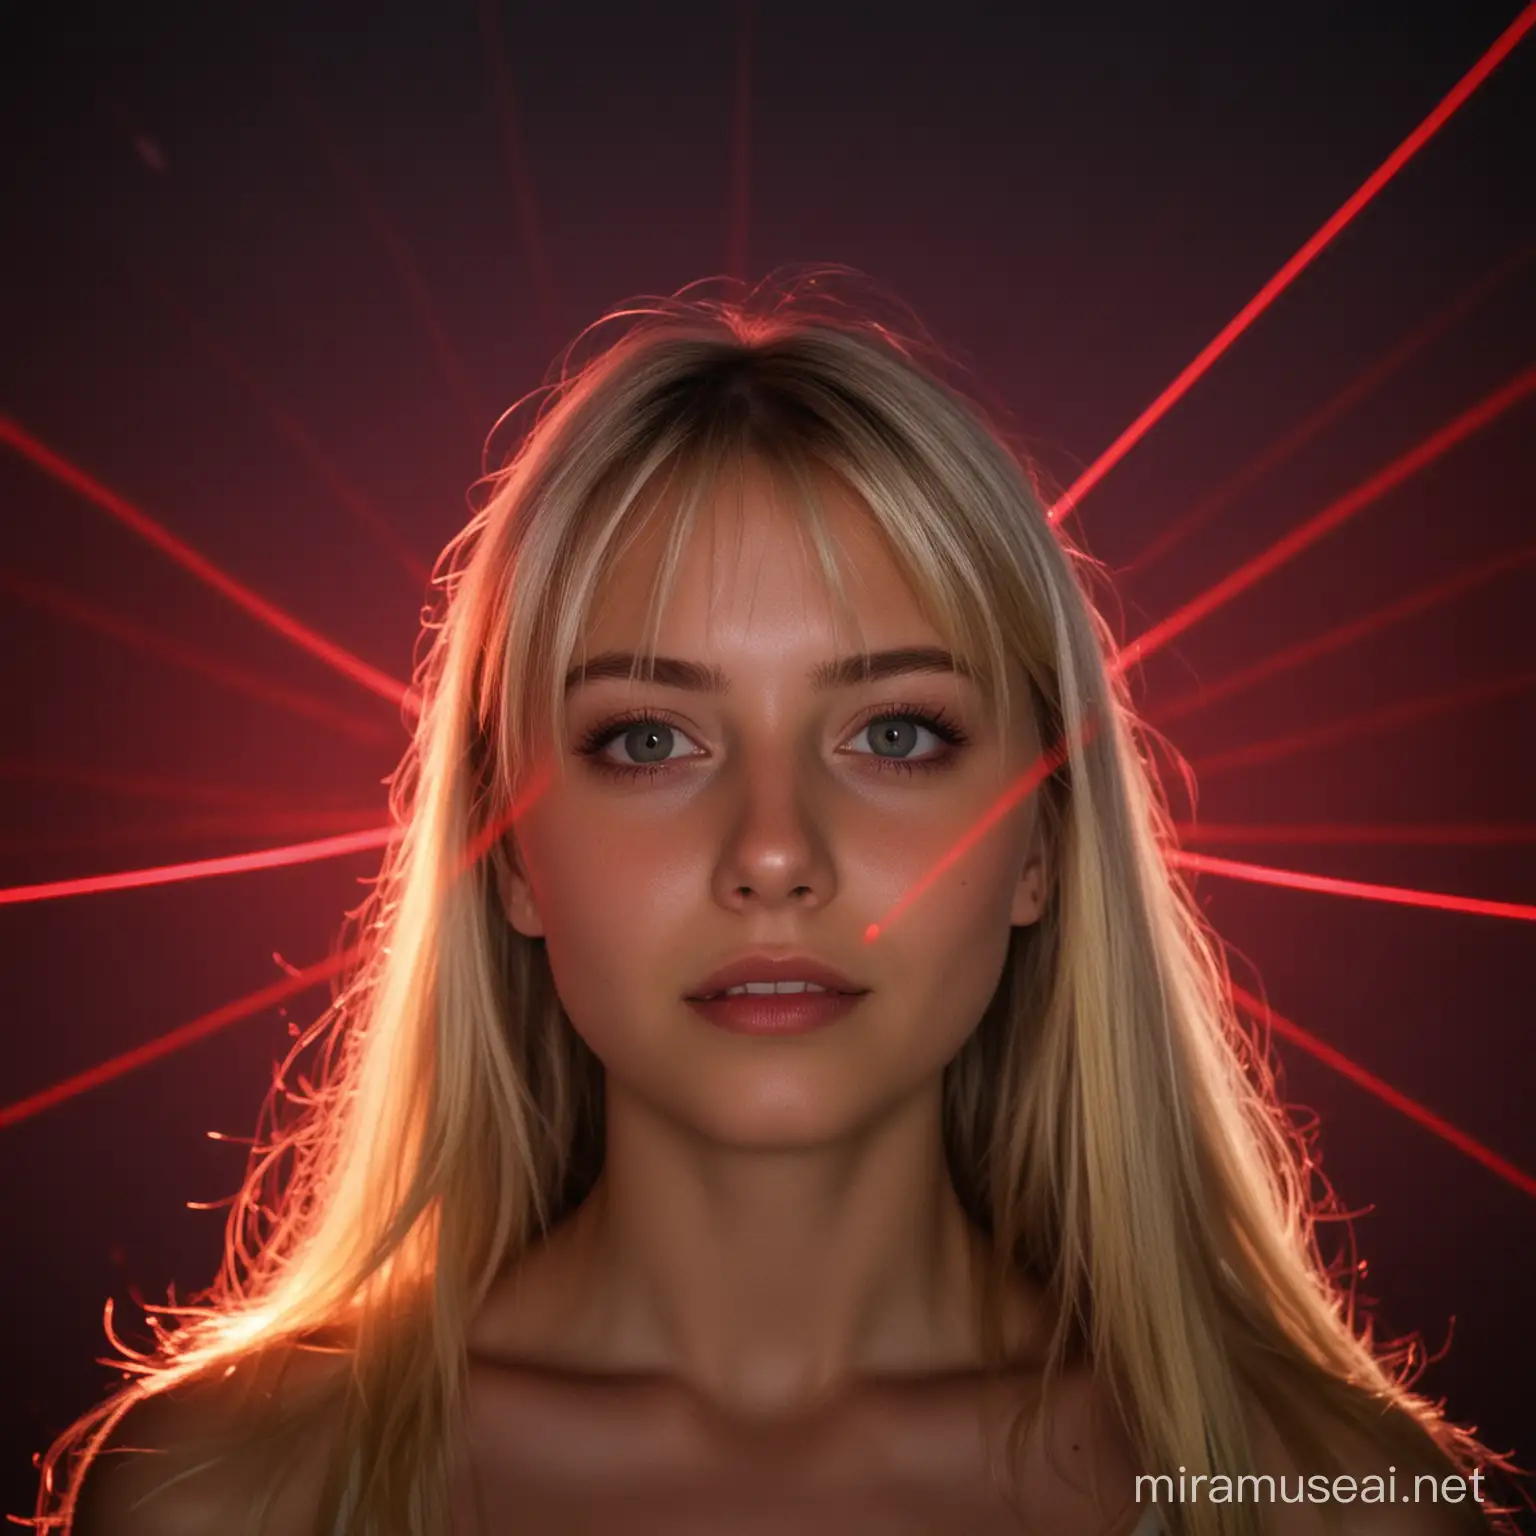 Blonde Girl Under Red Laser Lights in the Dark